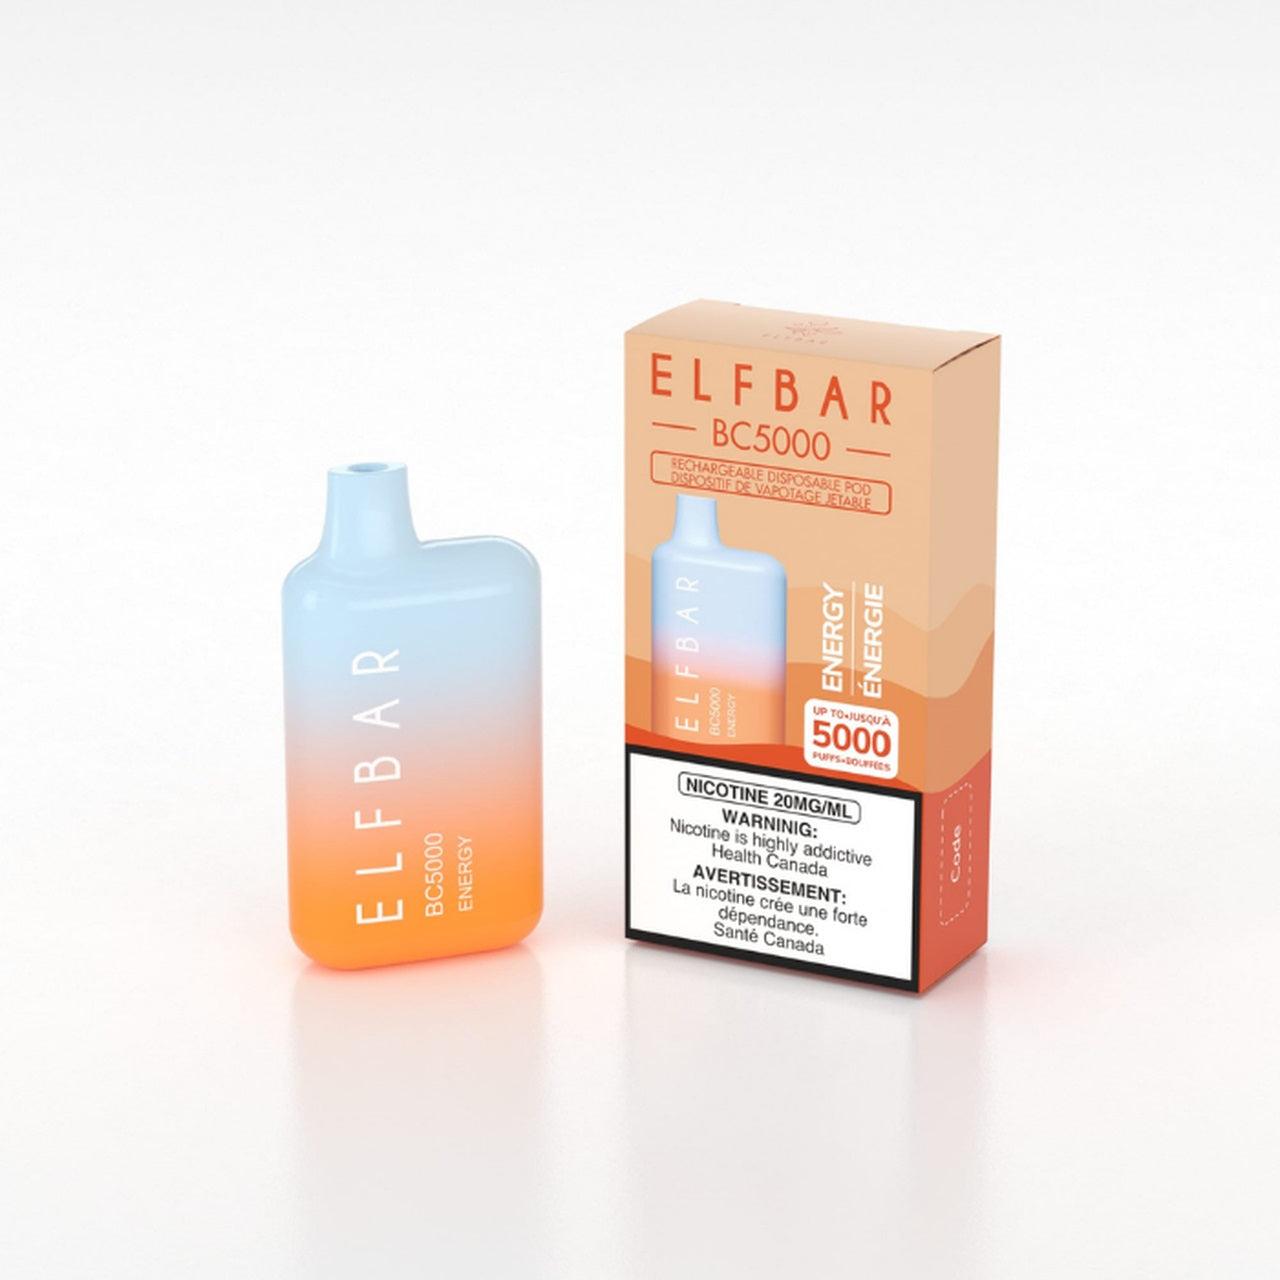 ELFBAR BC5000 - ENERGY